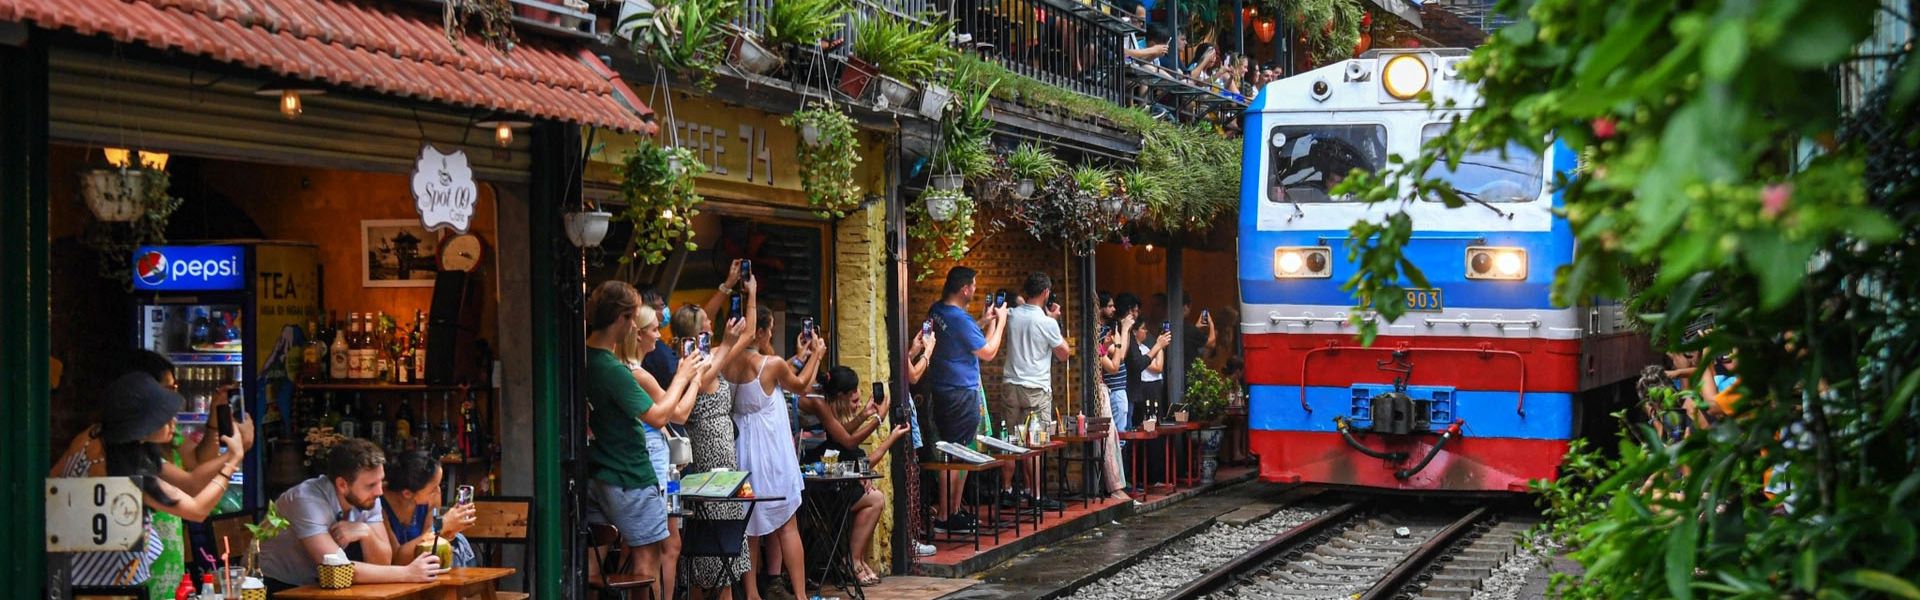 La strada del treno di Hanoi: guida e consigli di viaggio